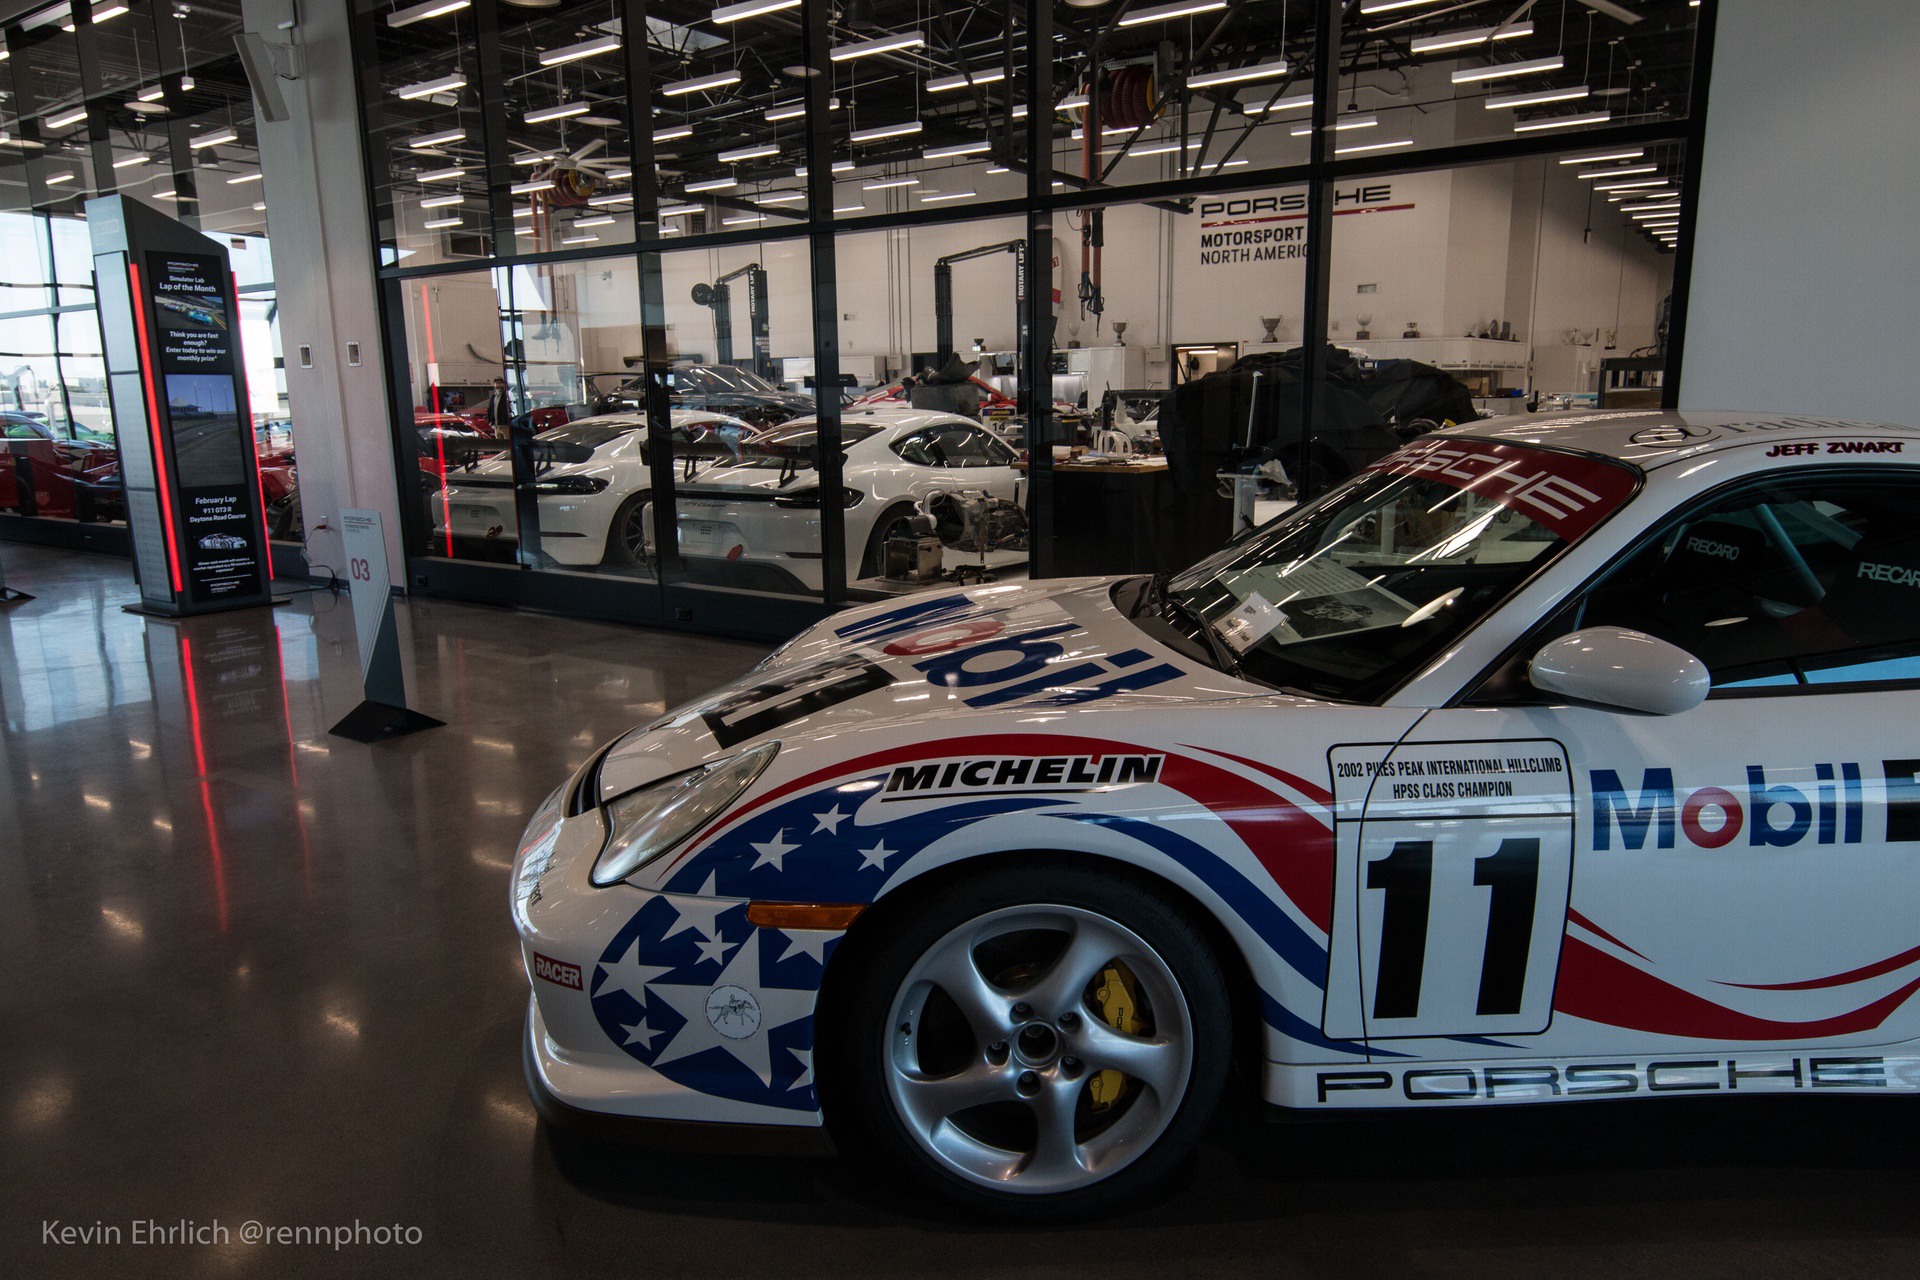 2002 Porsche GT2 on display in Porsche Motorsport North America workshop